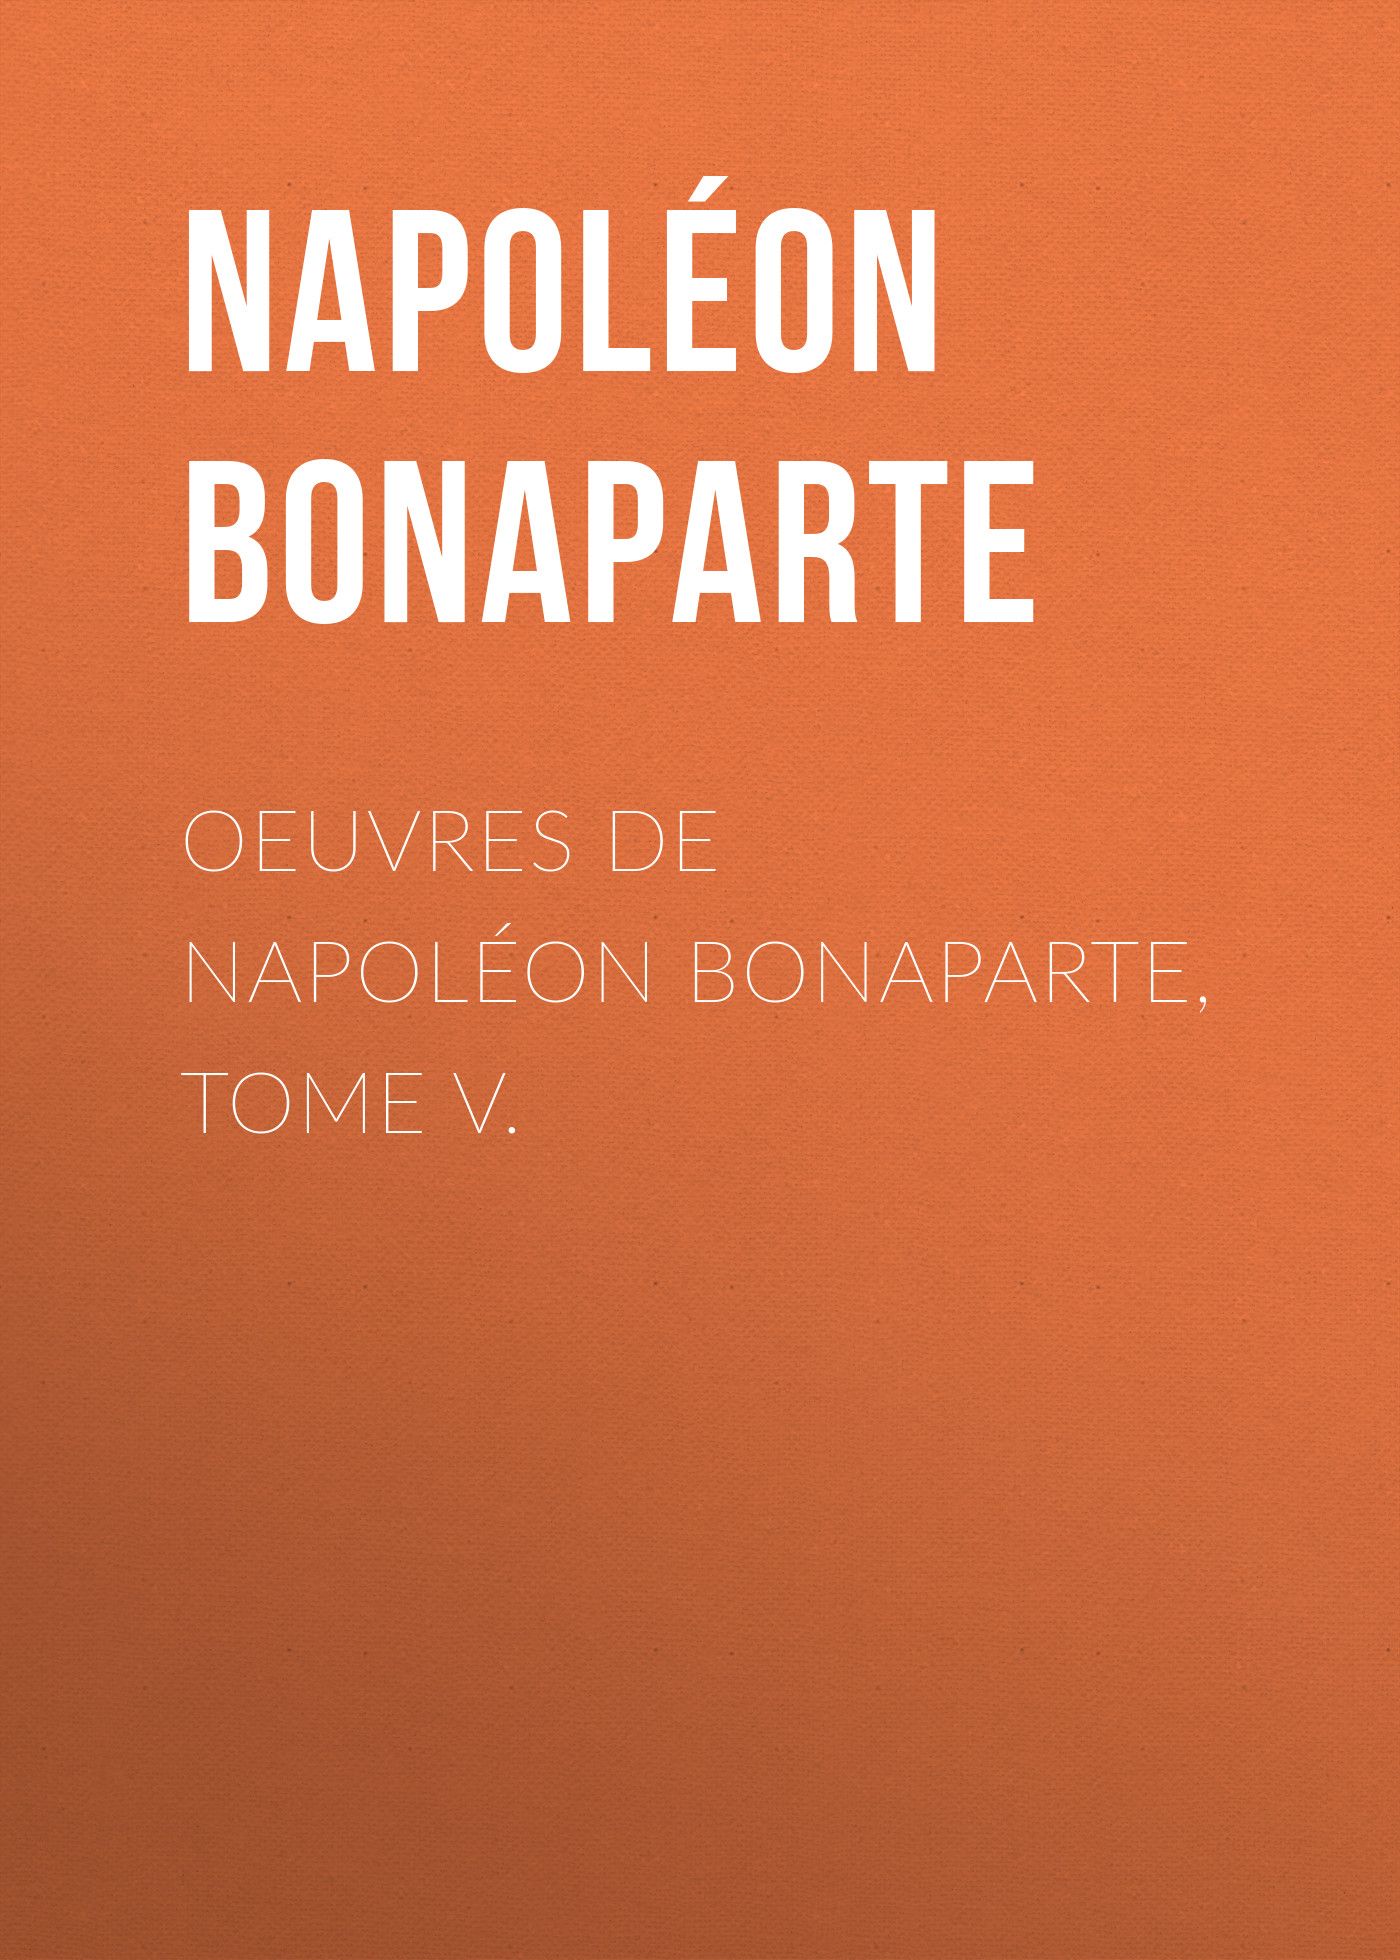 Книга Œuvres de Napoléon Bonaparte, Tome V из серии , созданная Buonaparte Napoleon, может относится к жанру Биографии и Мемуары, Зарубежная старинная литература, Зарубежная классика. Стоимость электронной книги Œuvres de Napoléon Bonaparte, Tome V с идентификатором 25293771 составляет 0 руб.